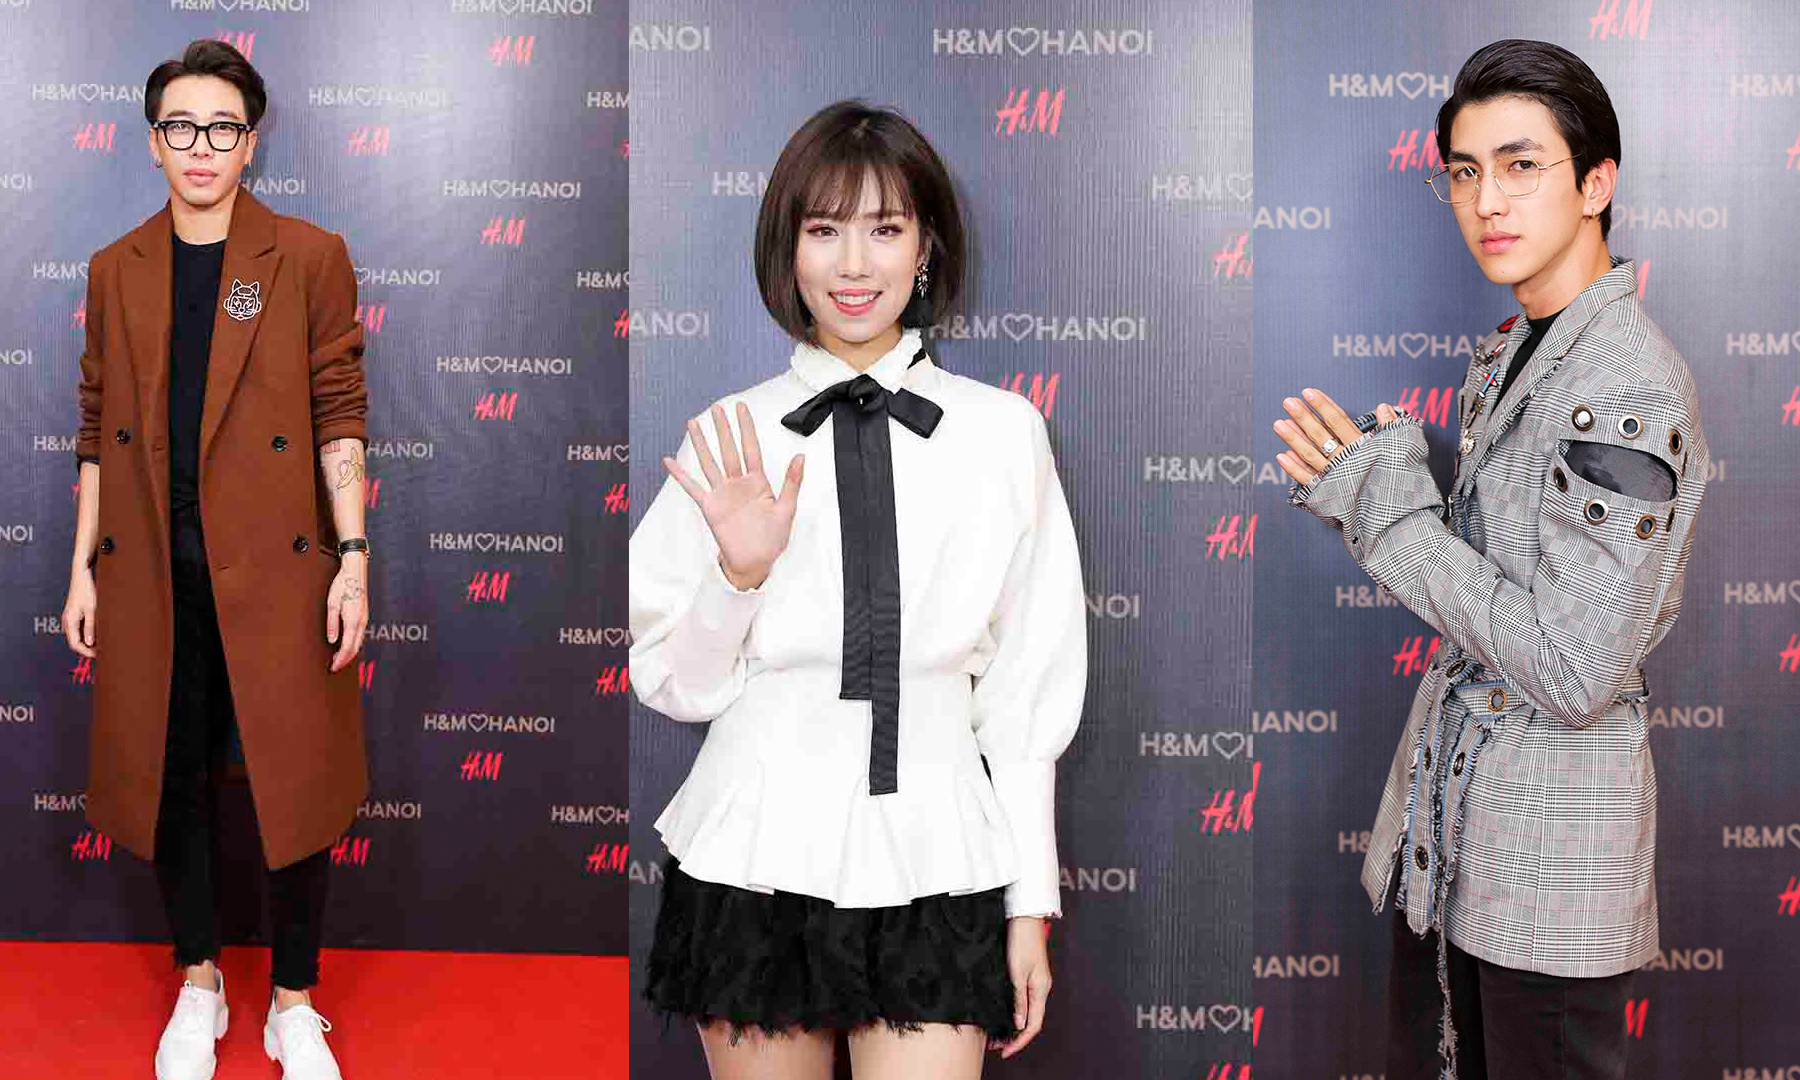 Min, Bình An, Hoàng Ku… mỗi người một vẻ tại sự kiện chào mừng của H&M tại thủ đô